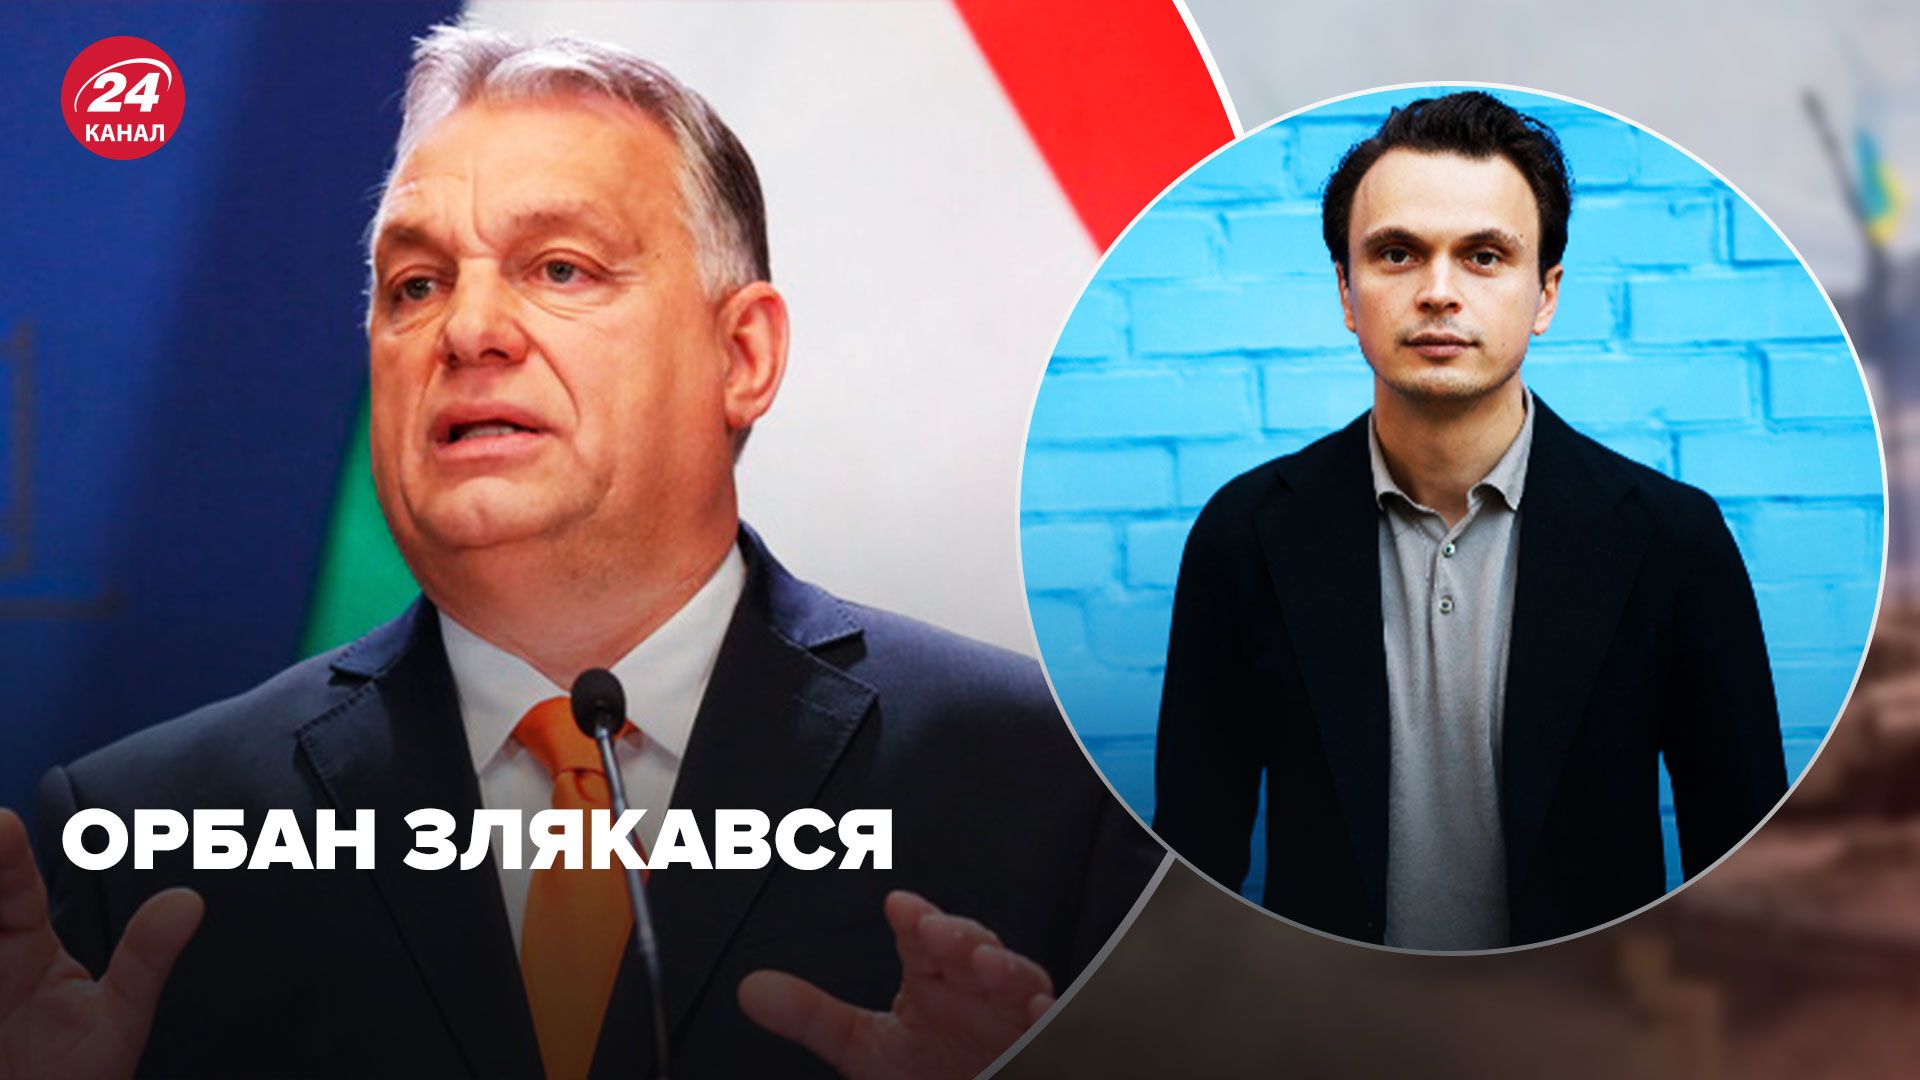 Орбан заговорил о миротворцах для Украины - политолог объяснил, что означает заявление - 24 Канал